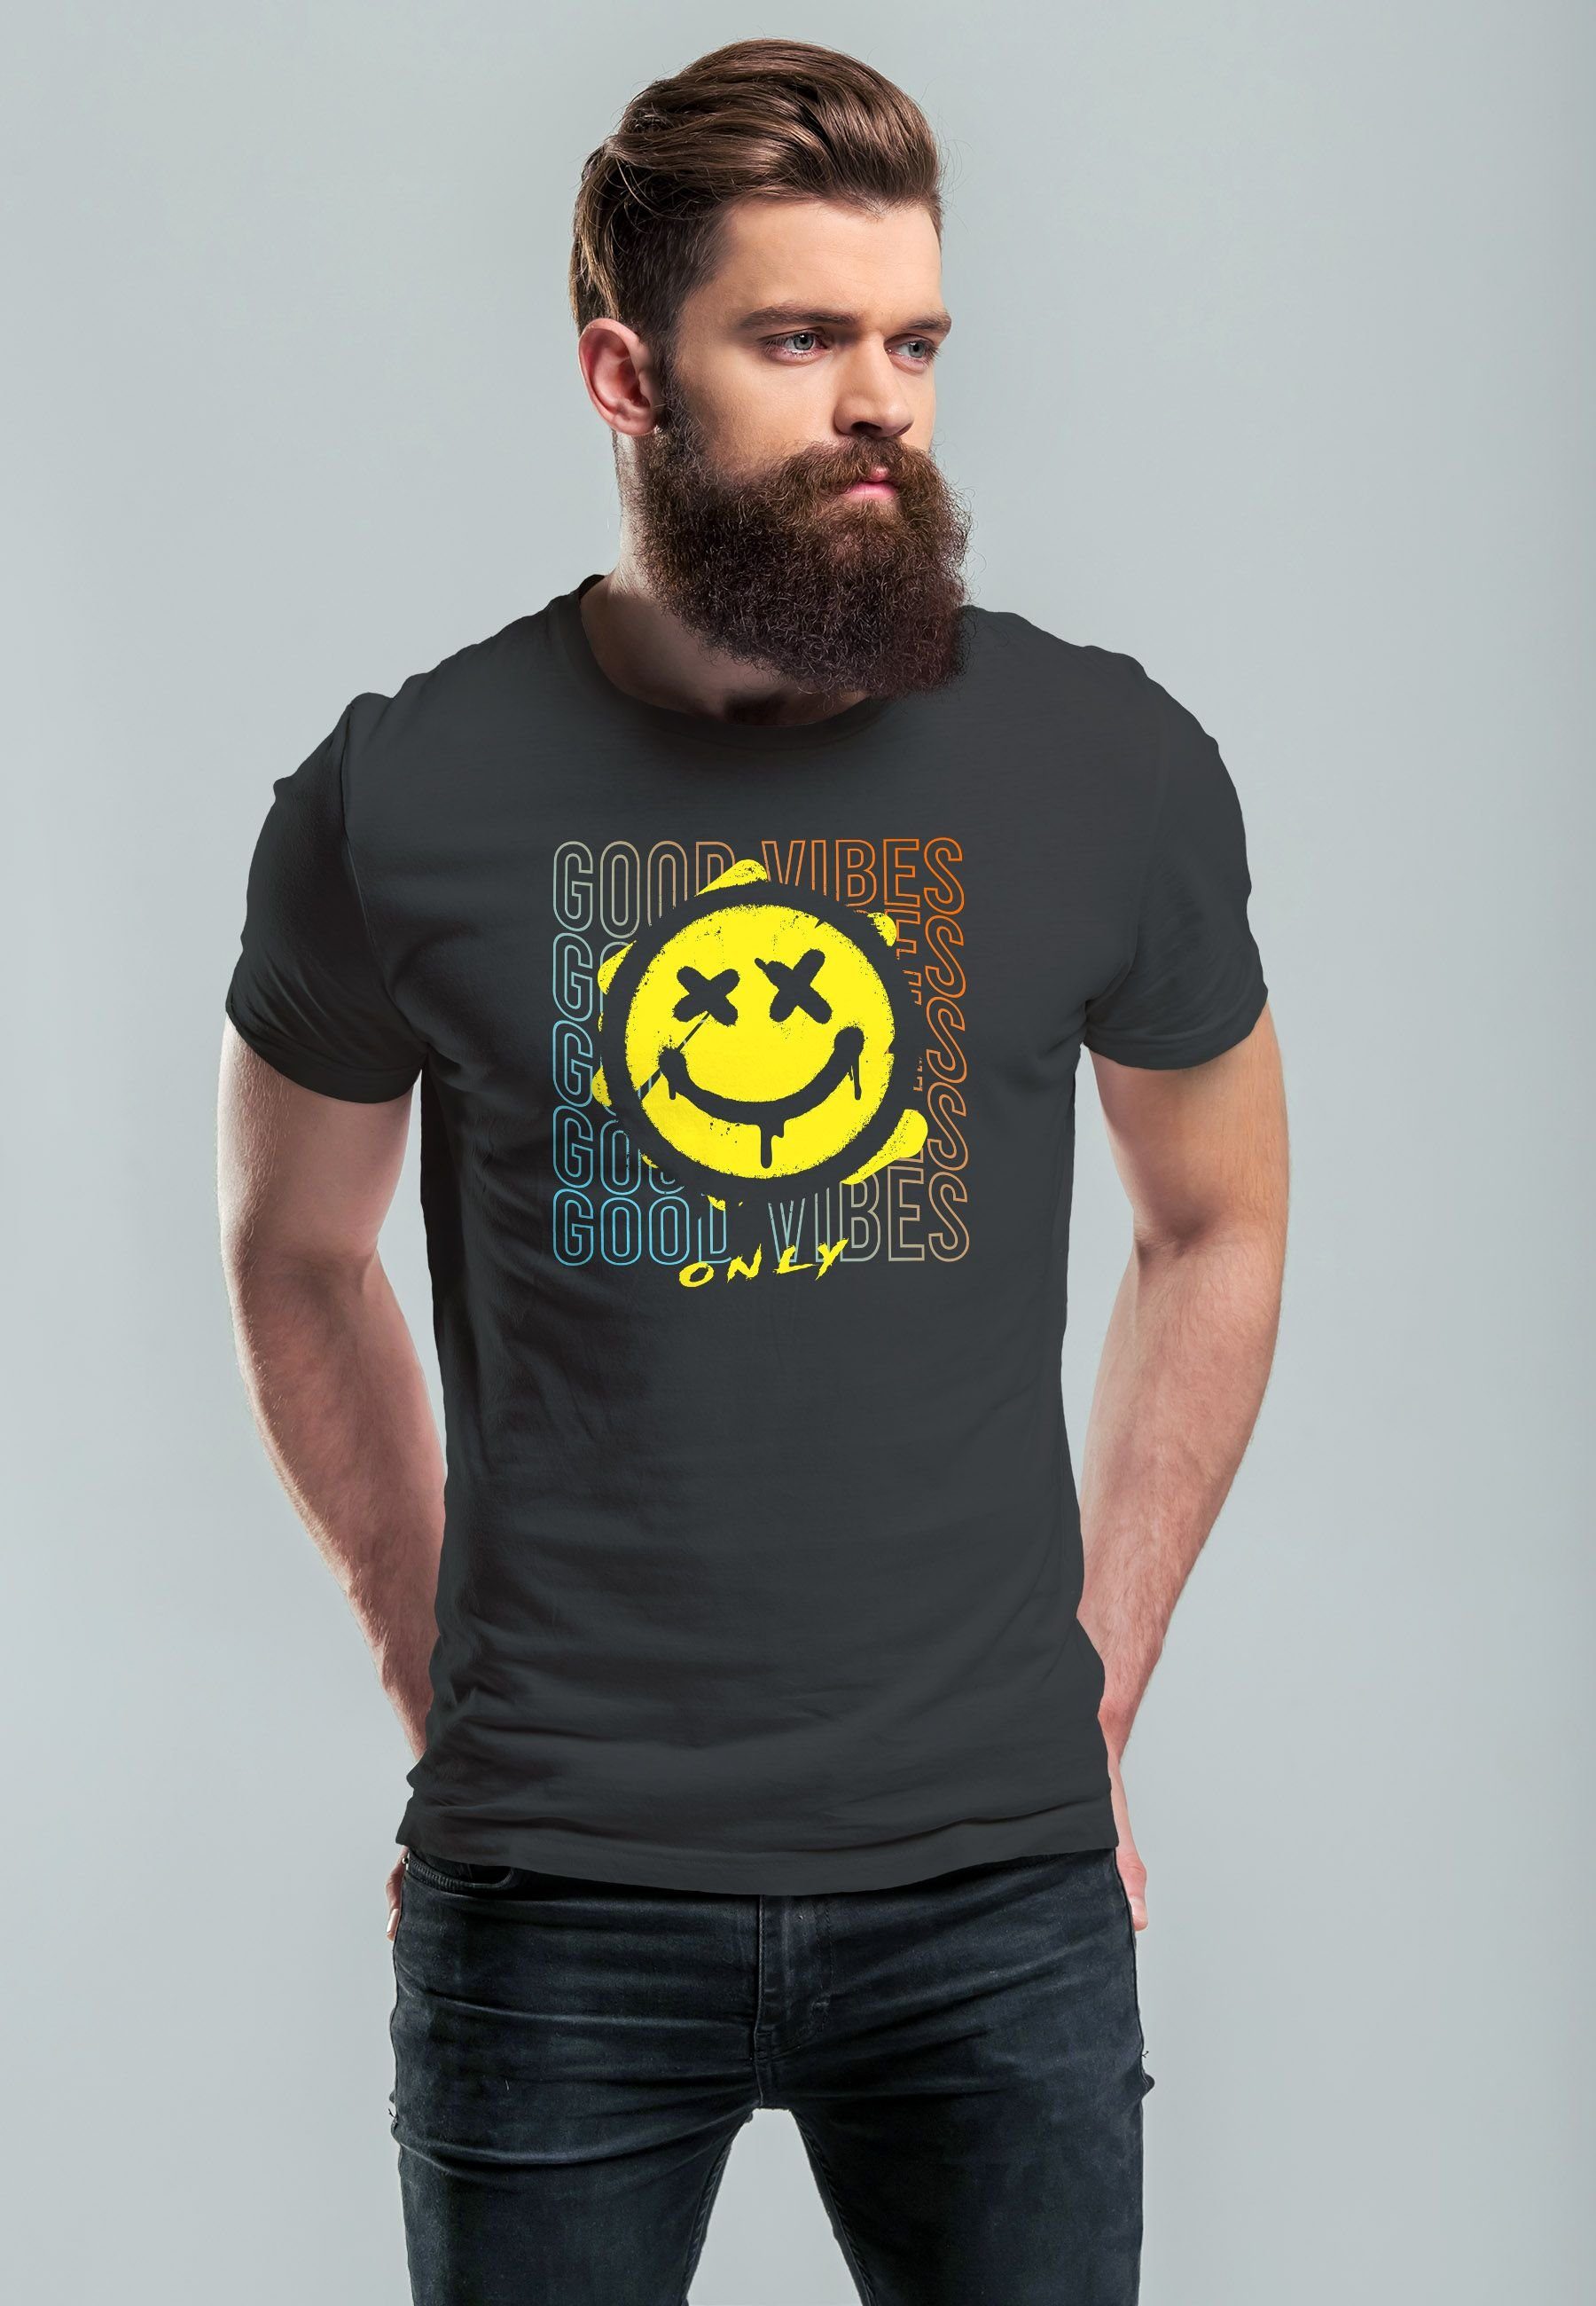 Neverless Print-Shirt Herren Aufdruck Smiling Good Vibes T-Shirt Teachwe anthrazit Print Print Bedruckt Face mit